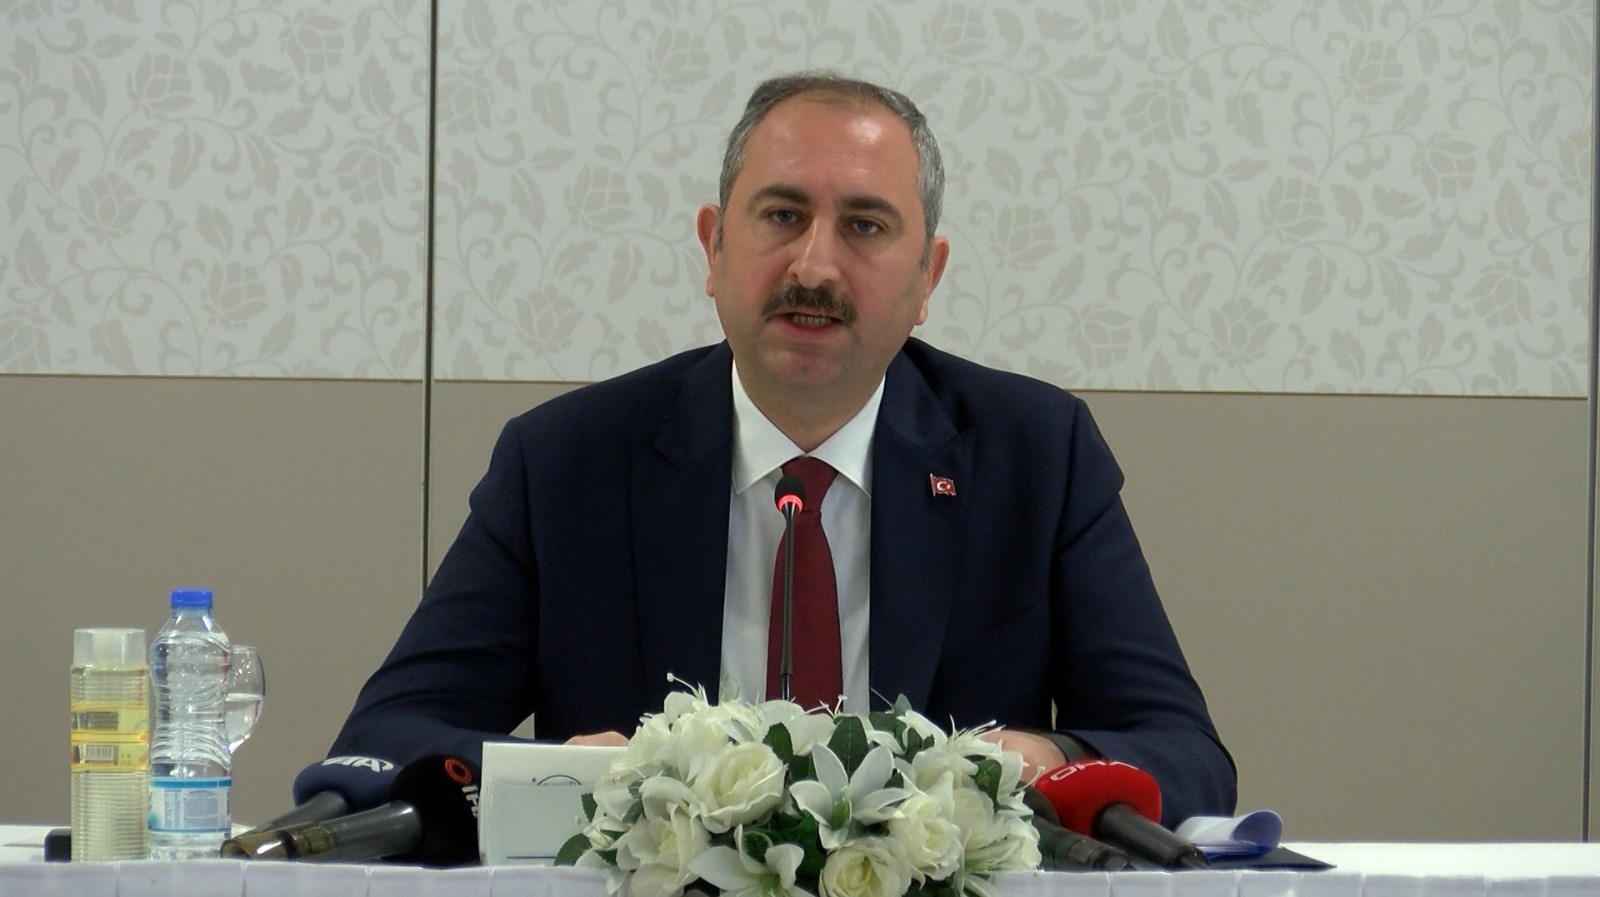 Adalet Bakanı Gül'den muhalefete İnsan Hakları Eylem Planı çağrısı: "Eksik bir şey varsa söylesinler"